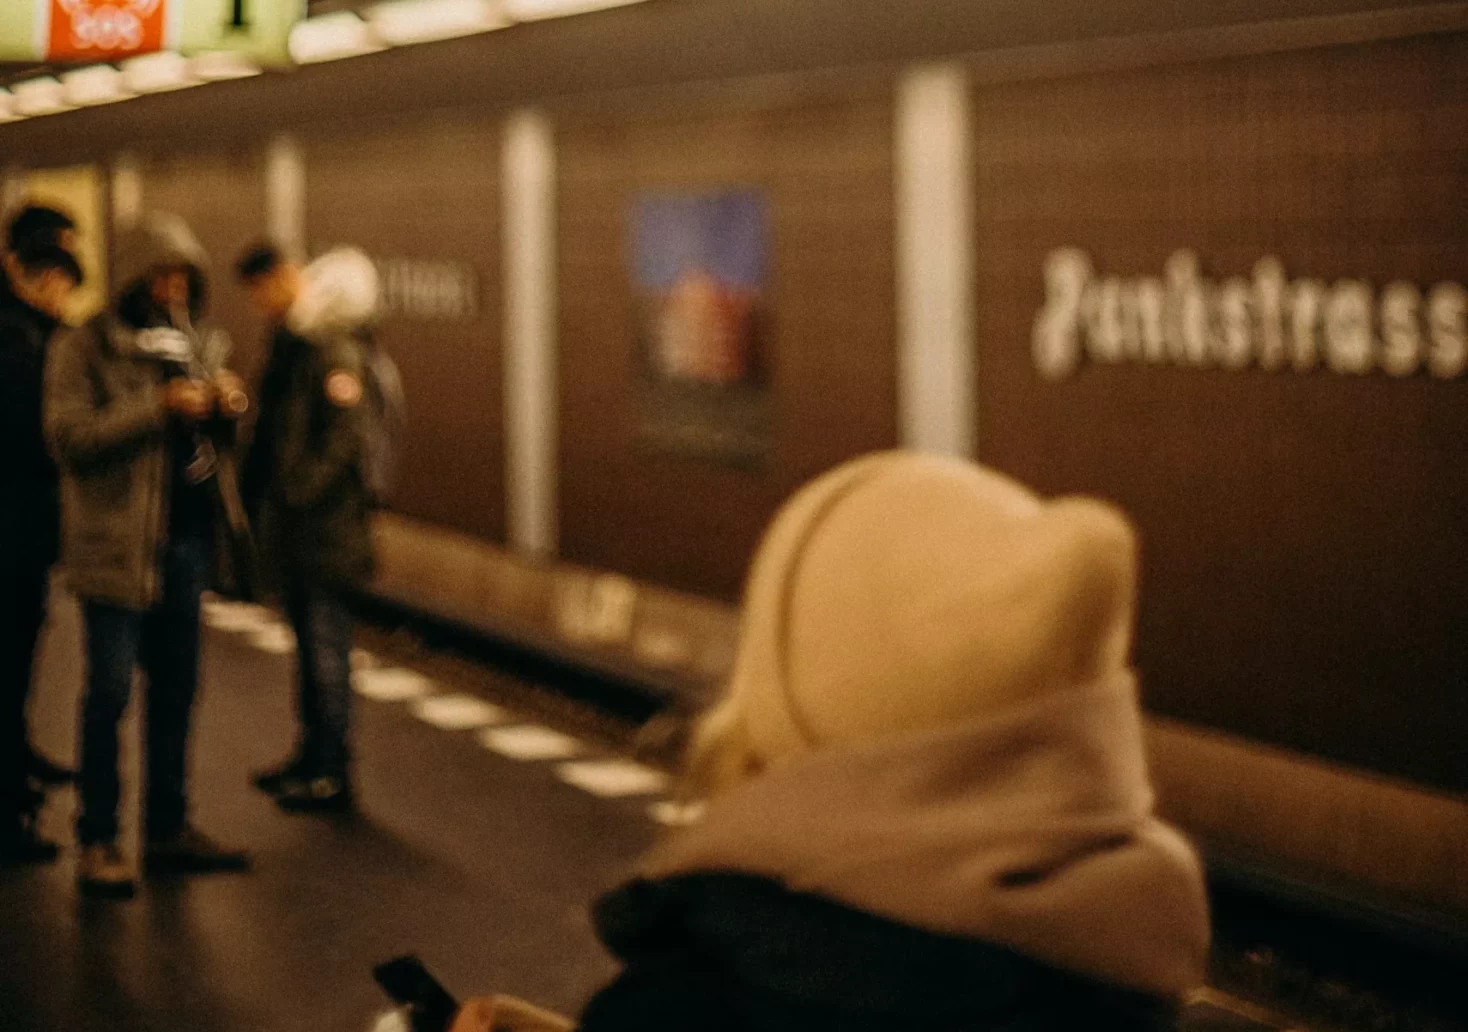 Bild auf 5min.at zeigt eine U-Bahn Station